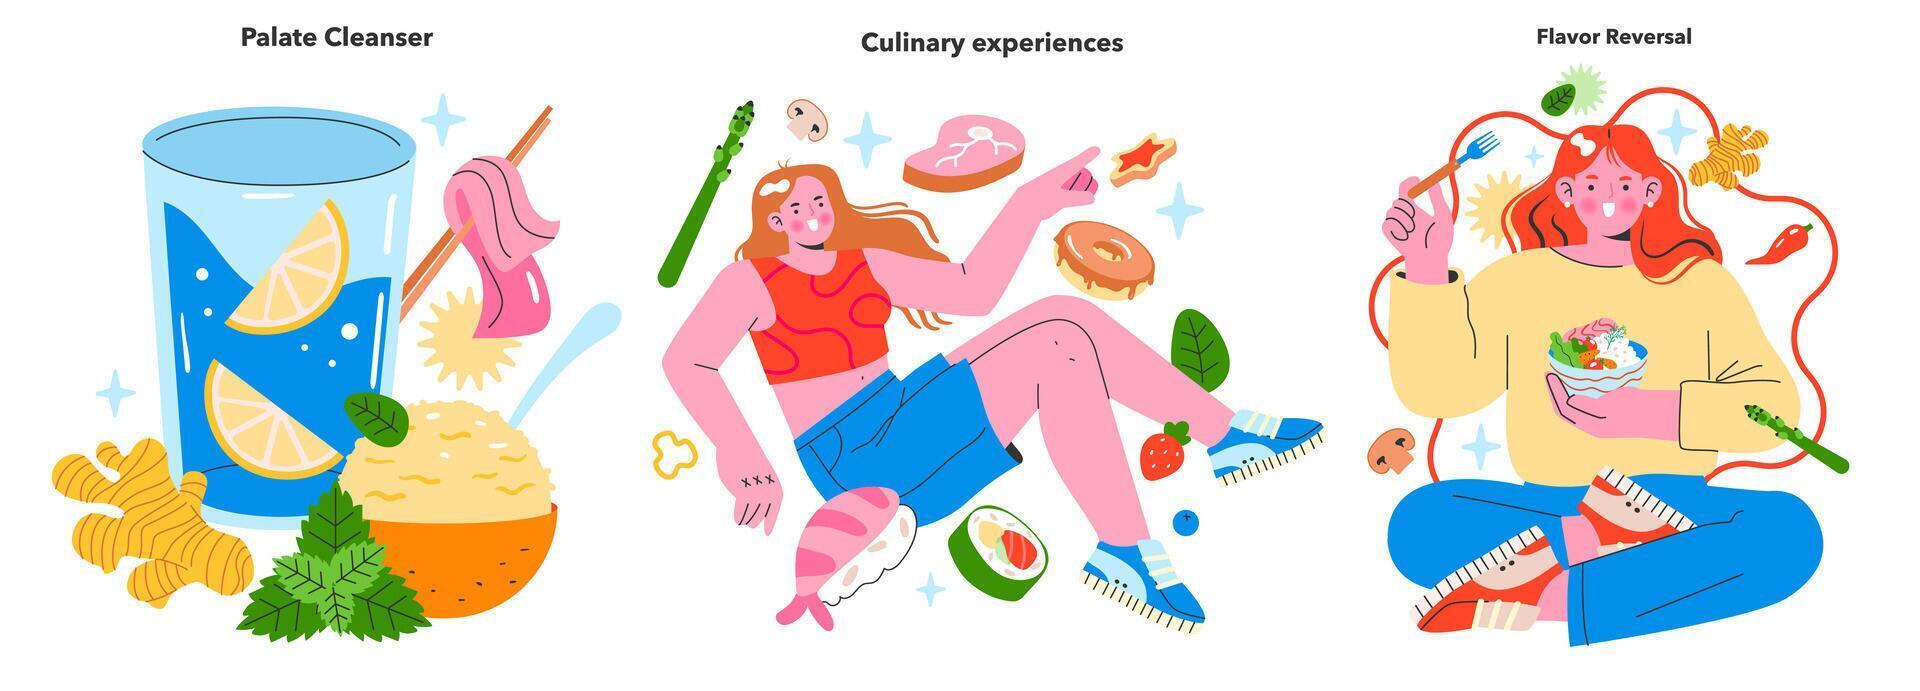 gastronomisch Abenteuer Satz. feiern das Kunst von Geschmack Reinigung, erkunden kulinarisch Erfahrungen, und das spielerisch Konzept von Geschmack Umkehrung. Vektor Illustration zum Feinschmecker